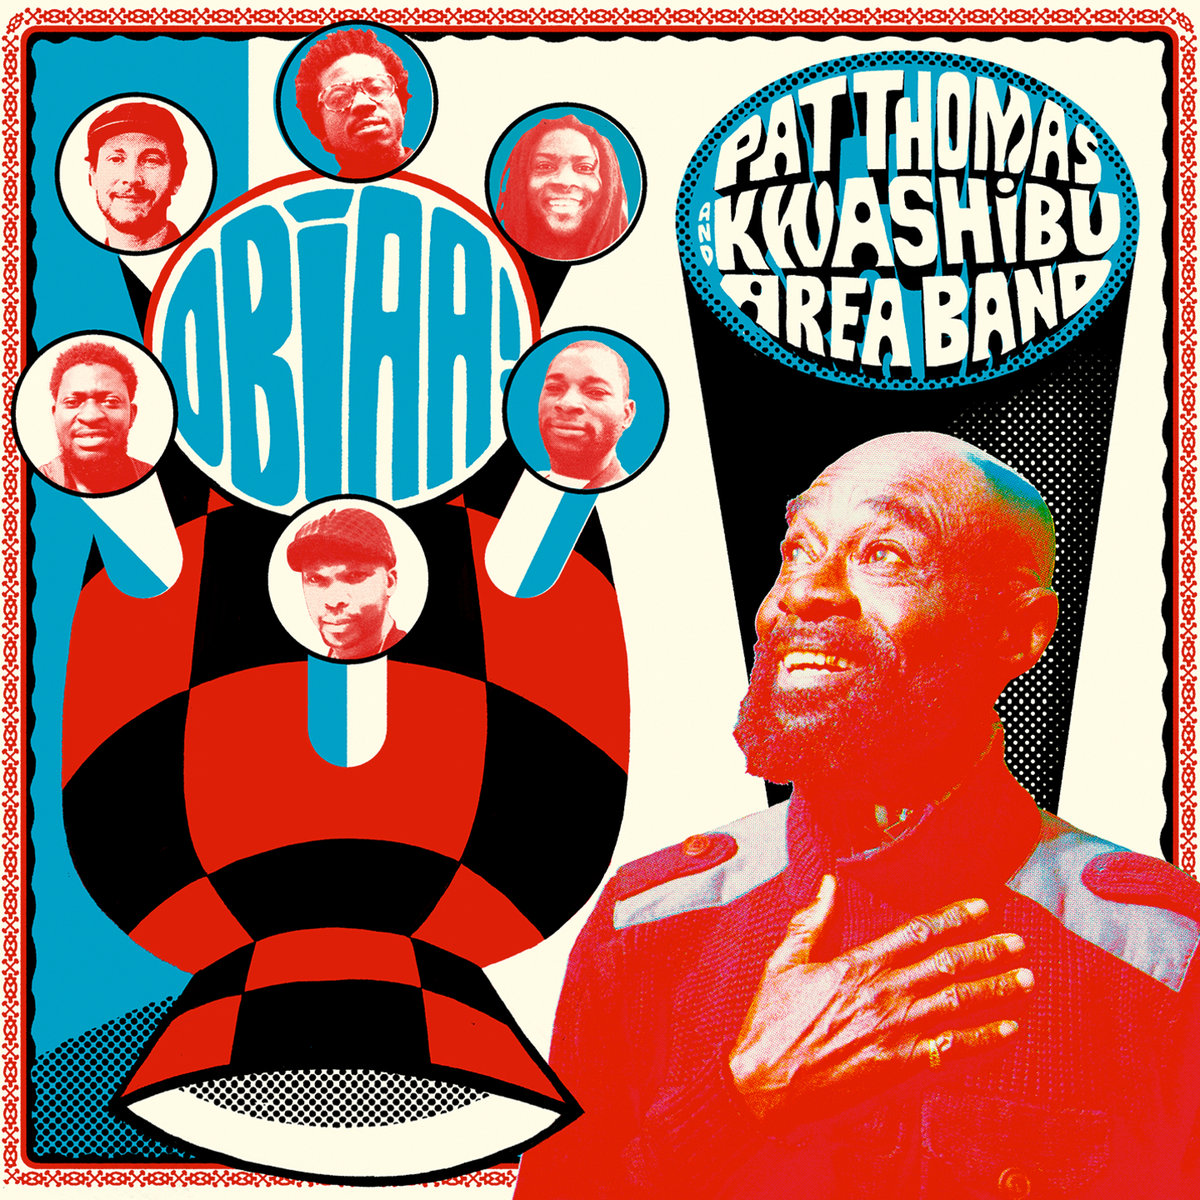 GreedyforBestMusic-Pat-Thomas-Kwashibu-Area-Band-Obiaa!-Strut-Records